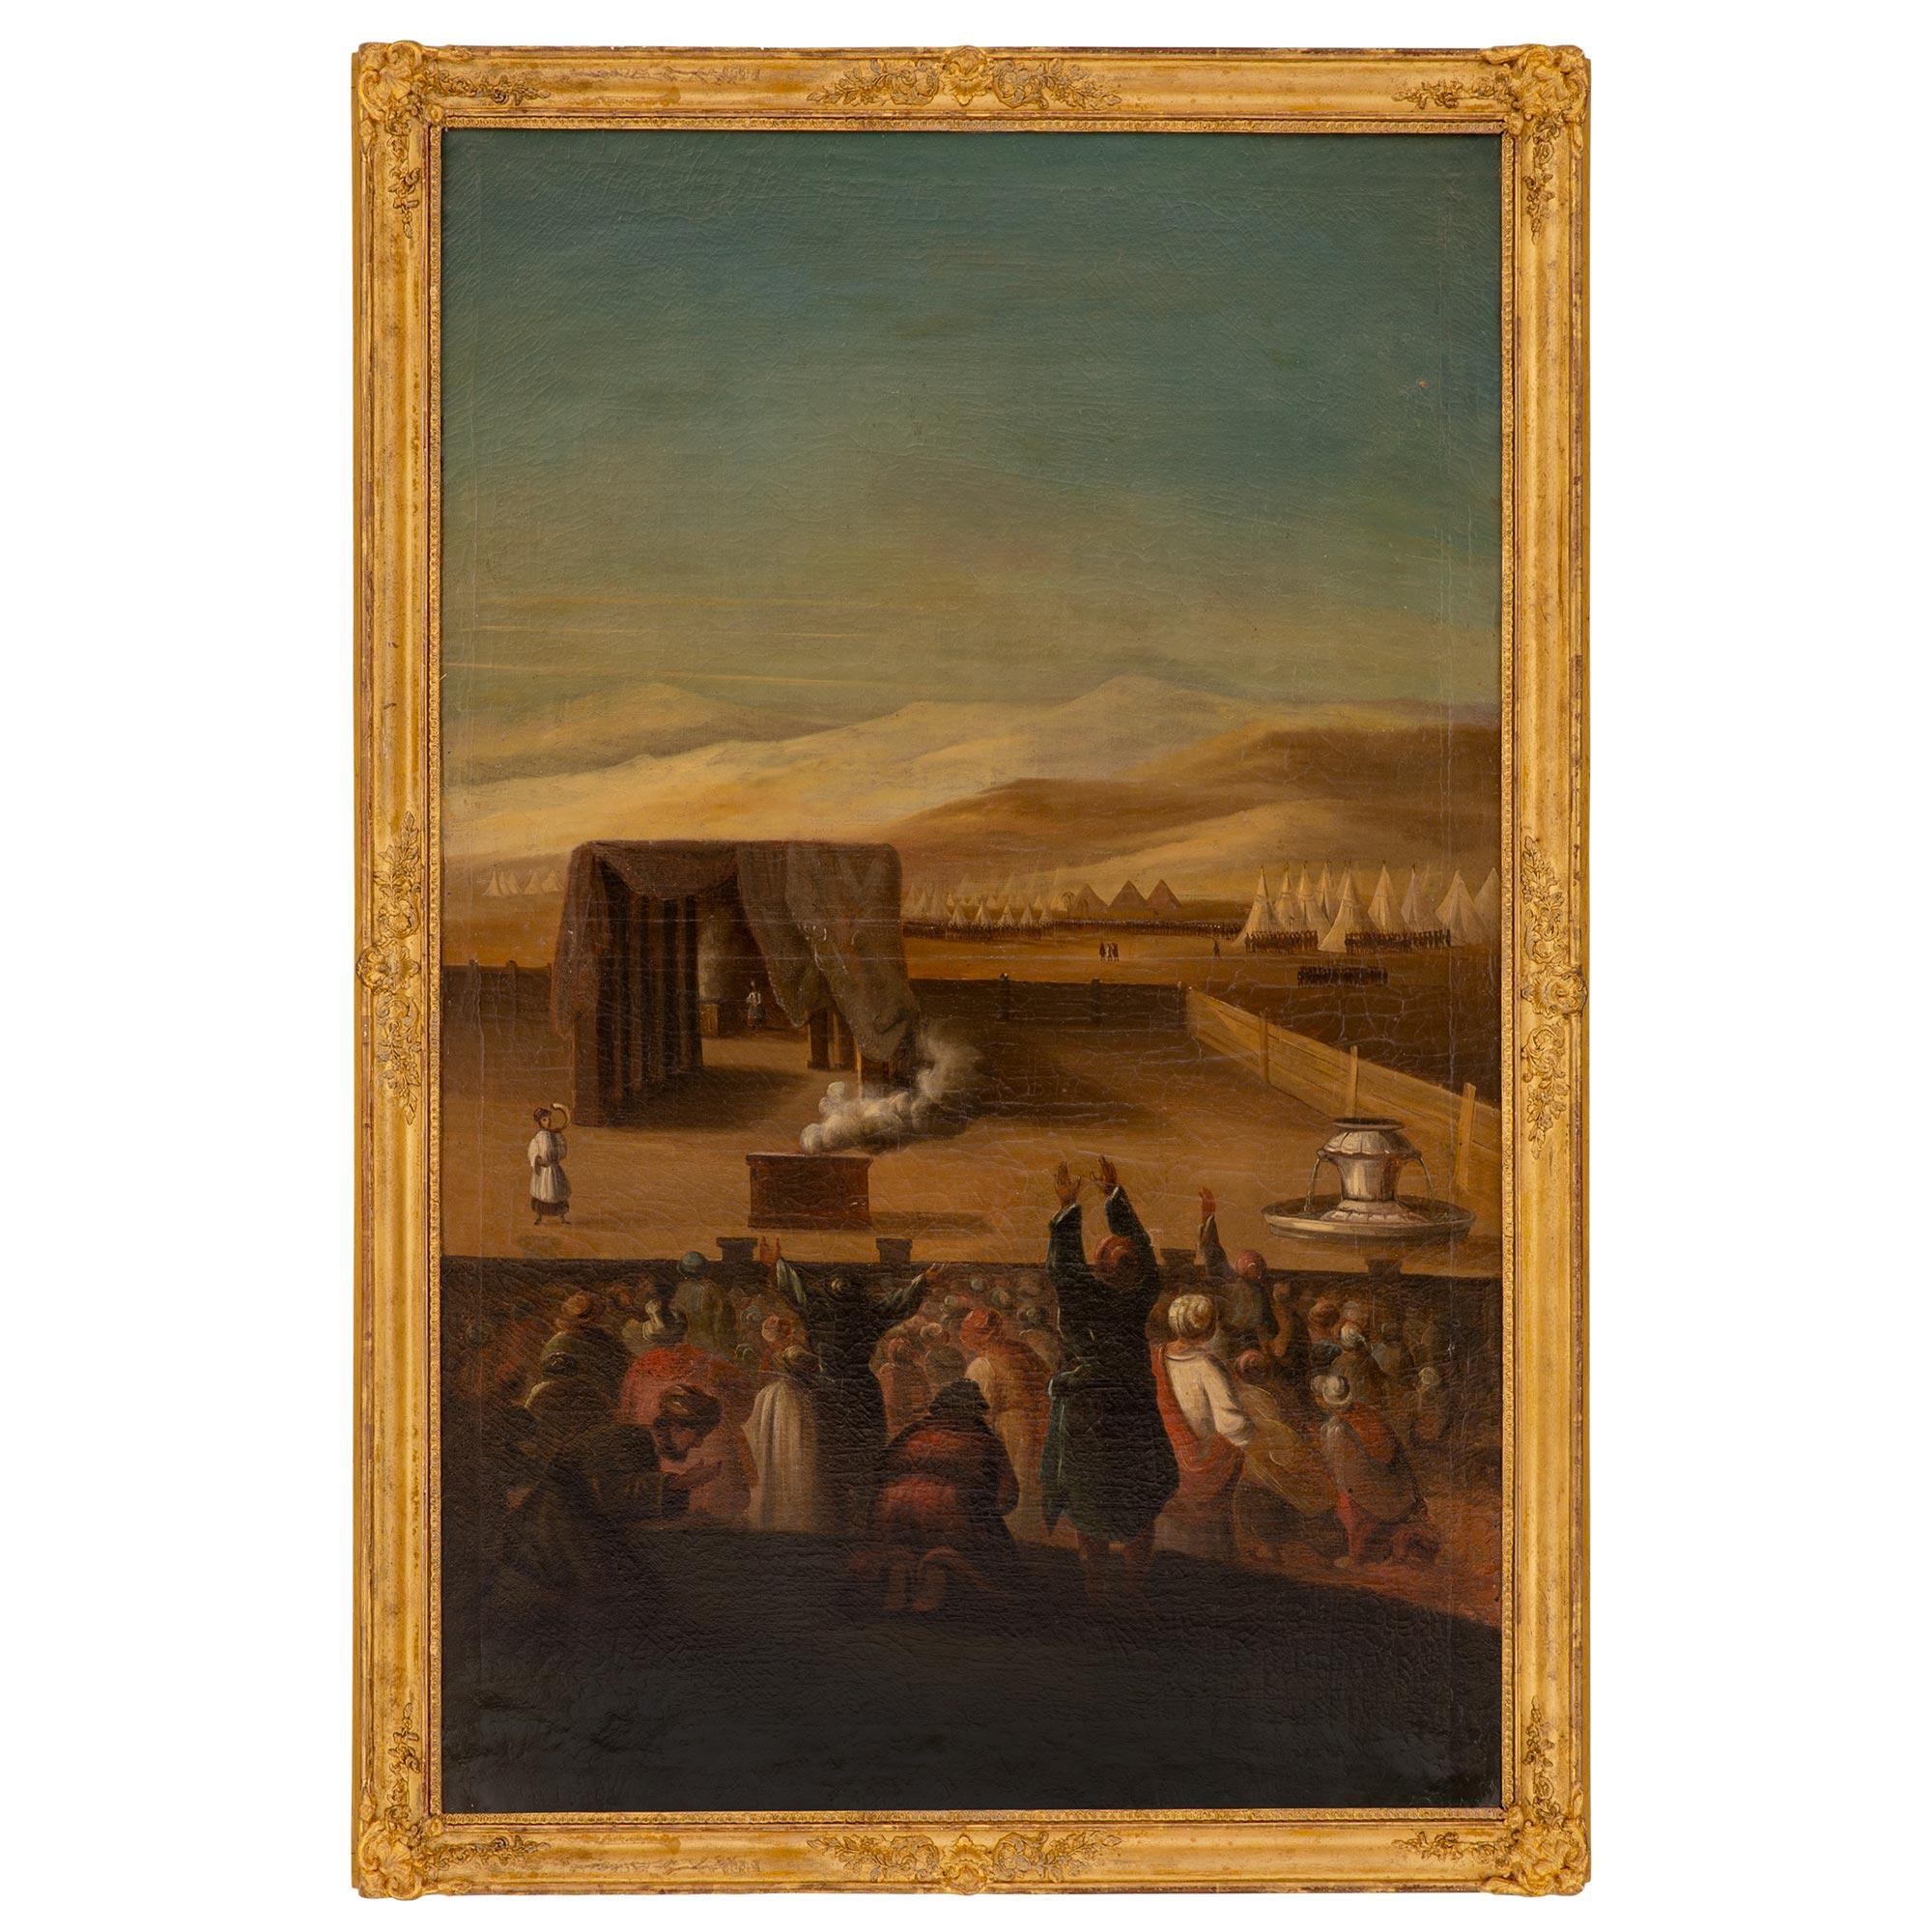 Italienisches Gemälde, Öl auf Leinwand, 19. Jahrhundert, im Originalrahmen aus vergoldetem Holz